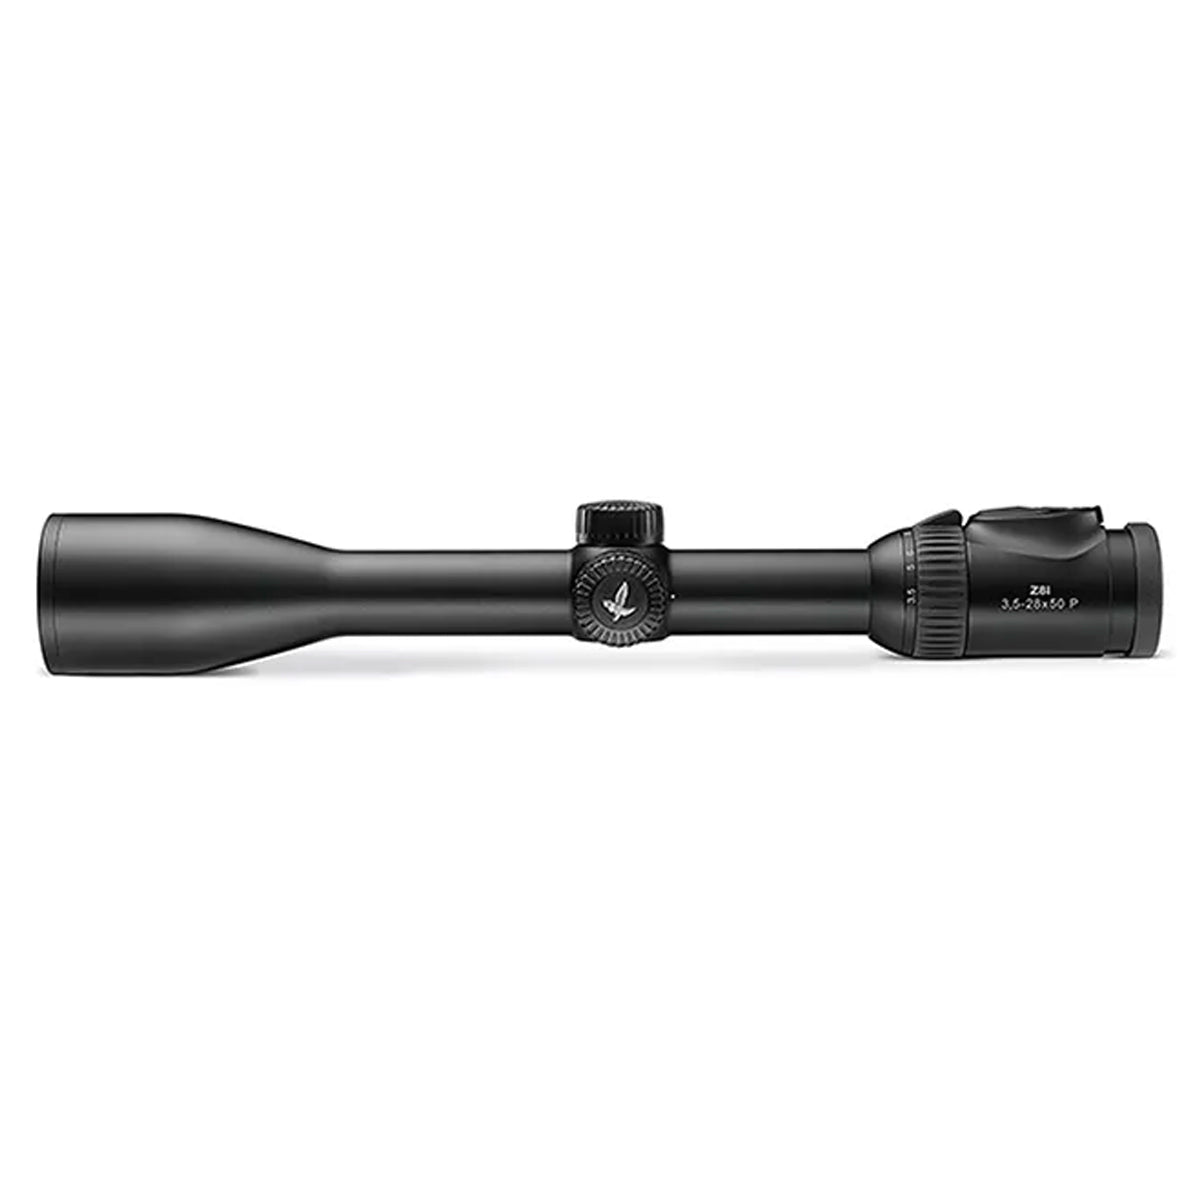 Swarovski Z8i 3.5-28x50 4A-I Riflescope in Swarovski Z8i 3.5-28x50 4A-I Riflescope by Swarovski Optik | Optics - goHUNT Shop by GOHUNT | Swarovski Optik - GOHUNT Shop